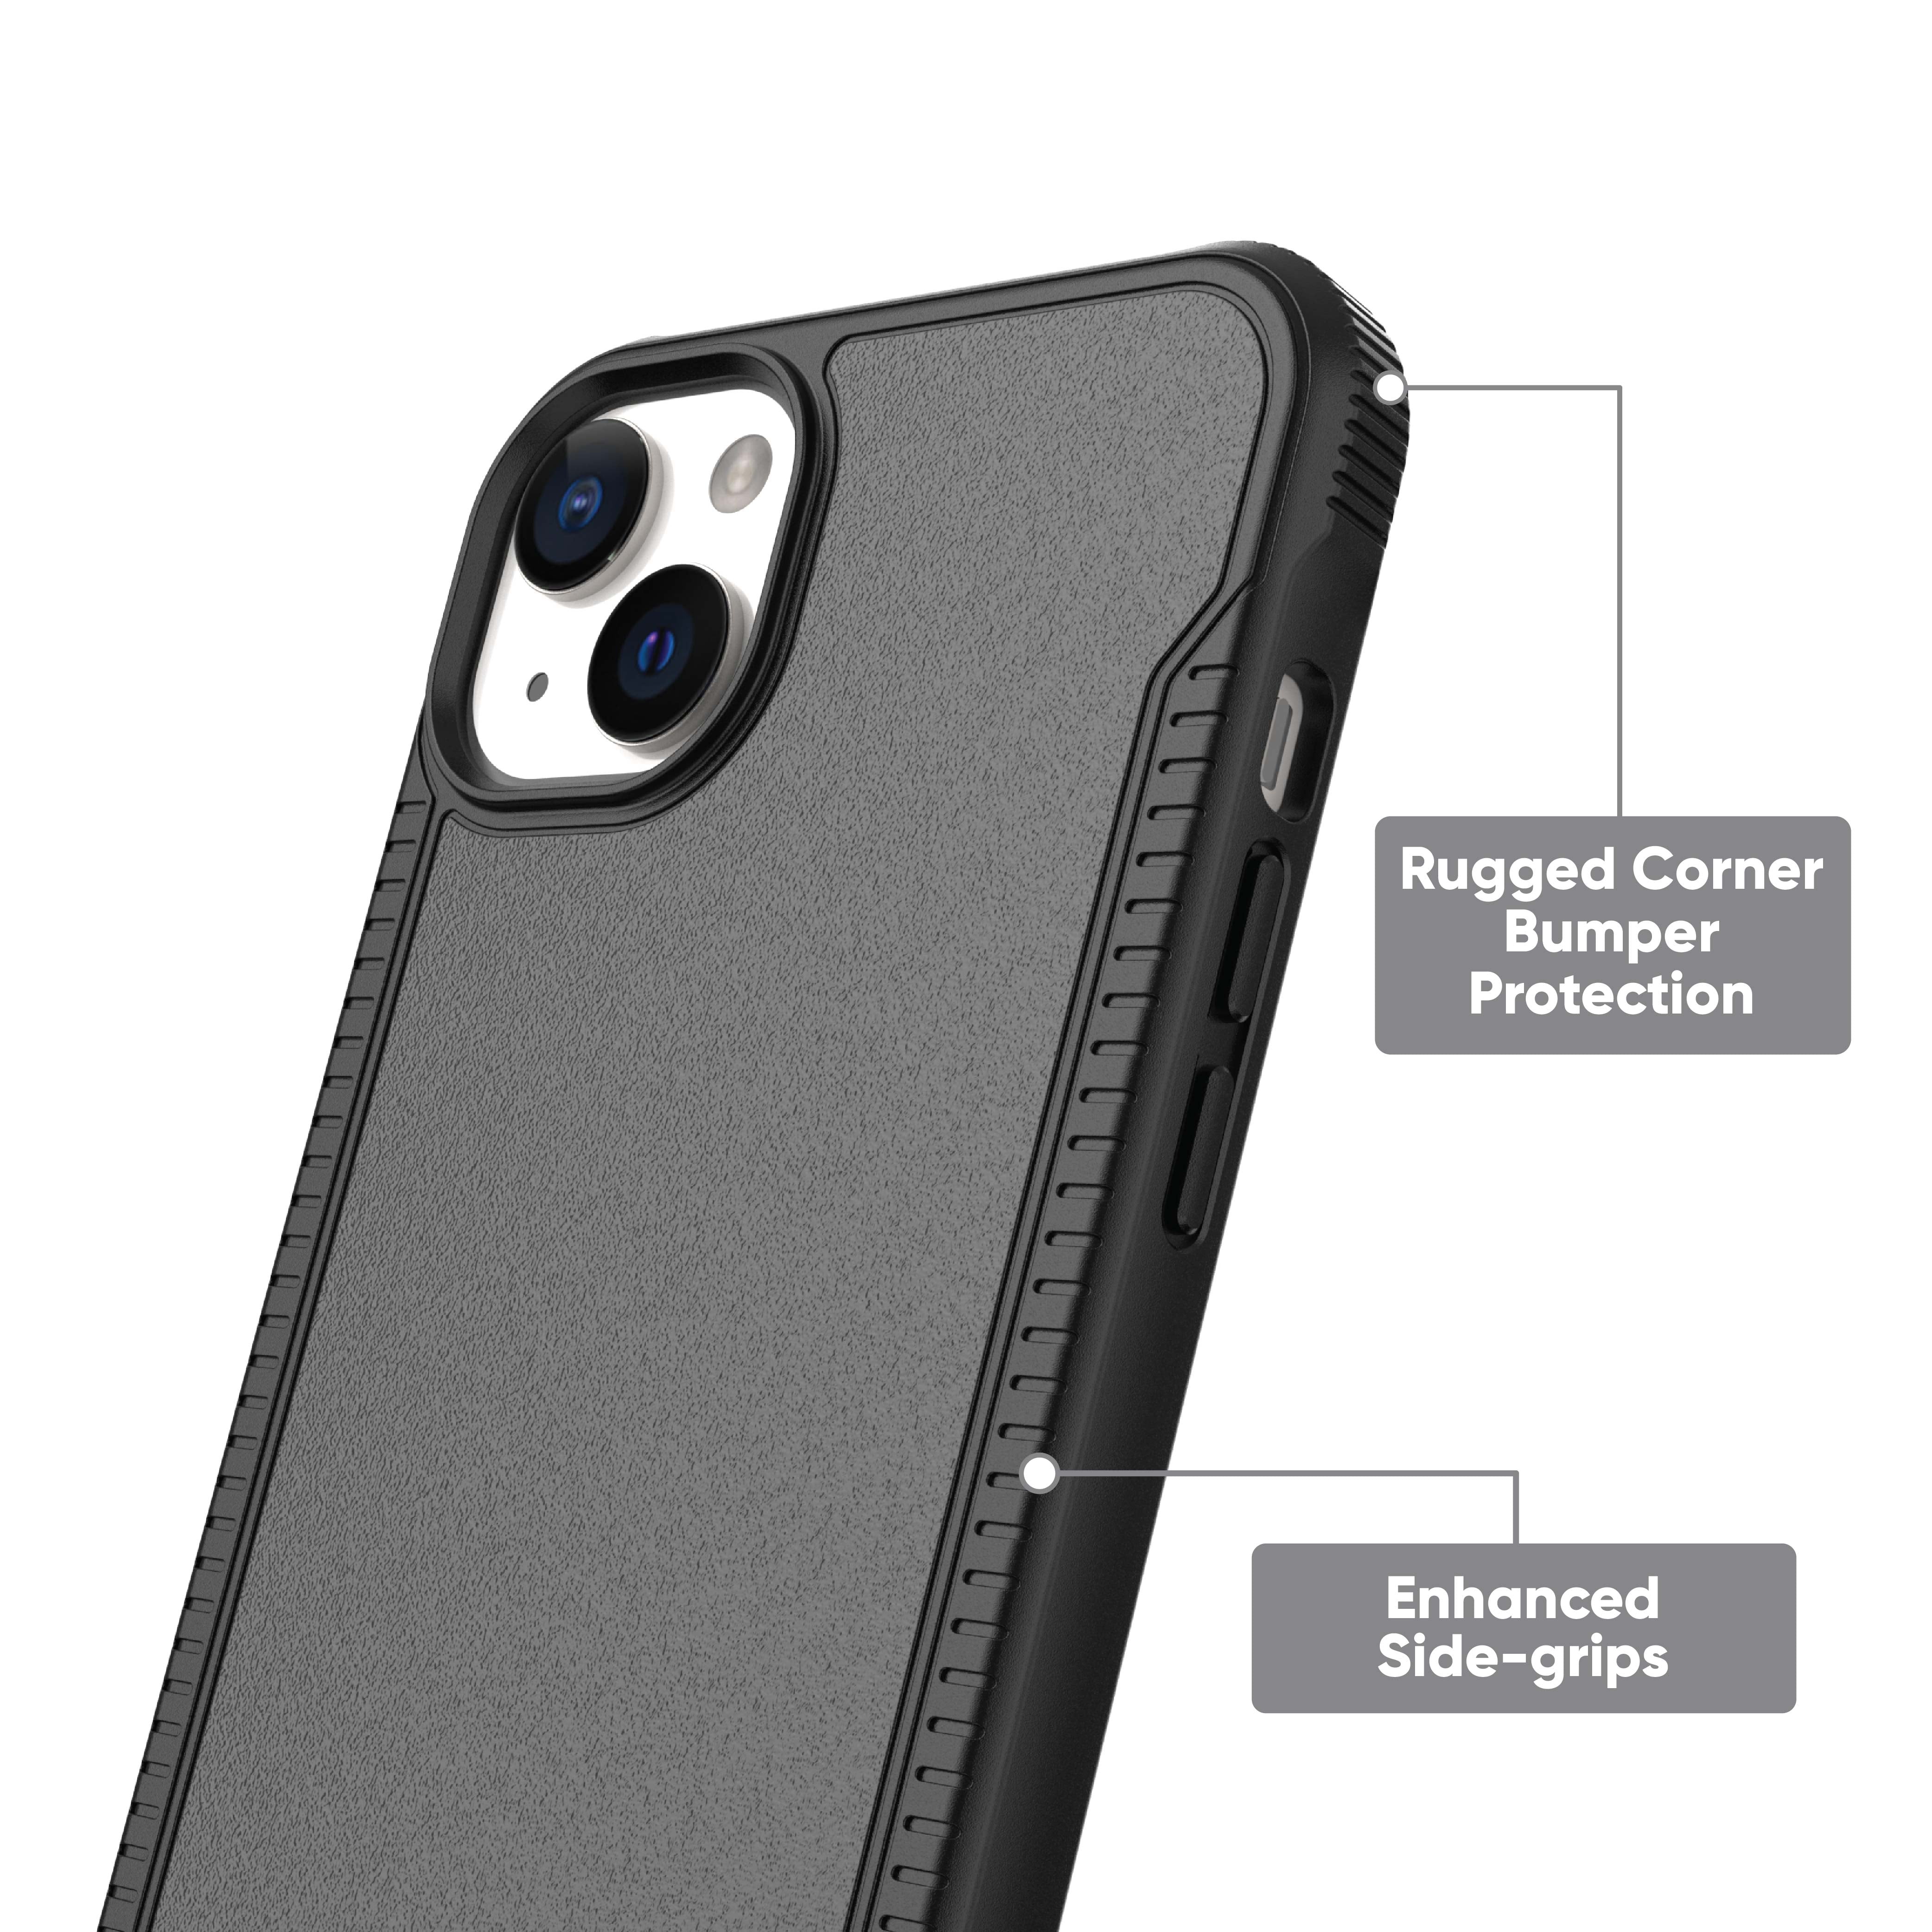 iPhone 13 Pro Case Review - Spigen Liquid Air Case 